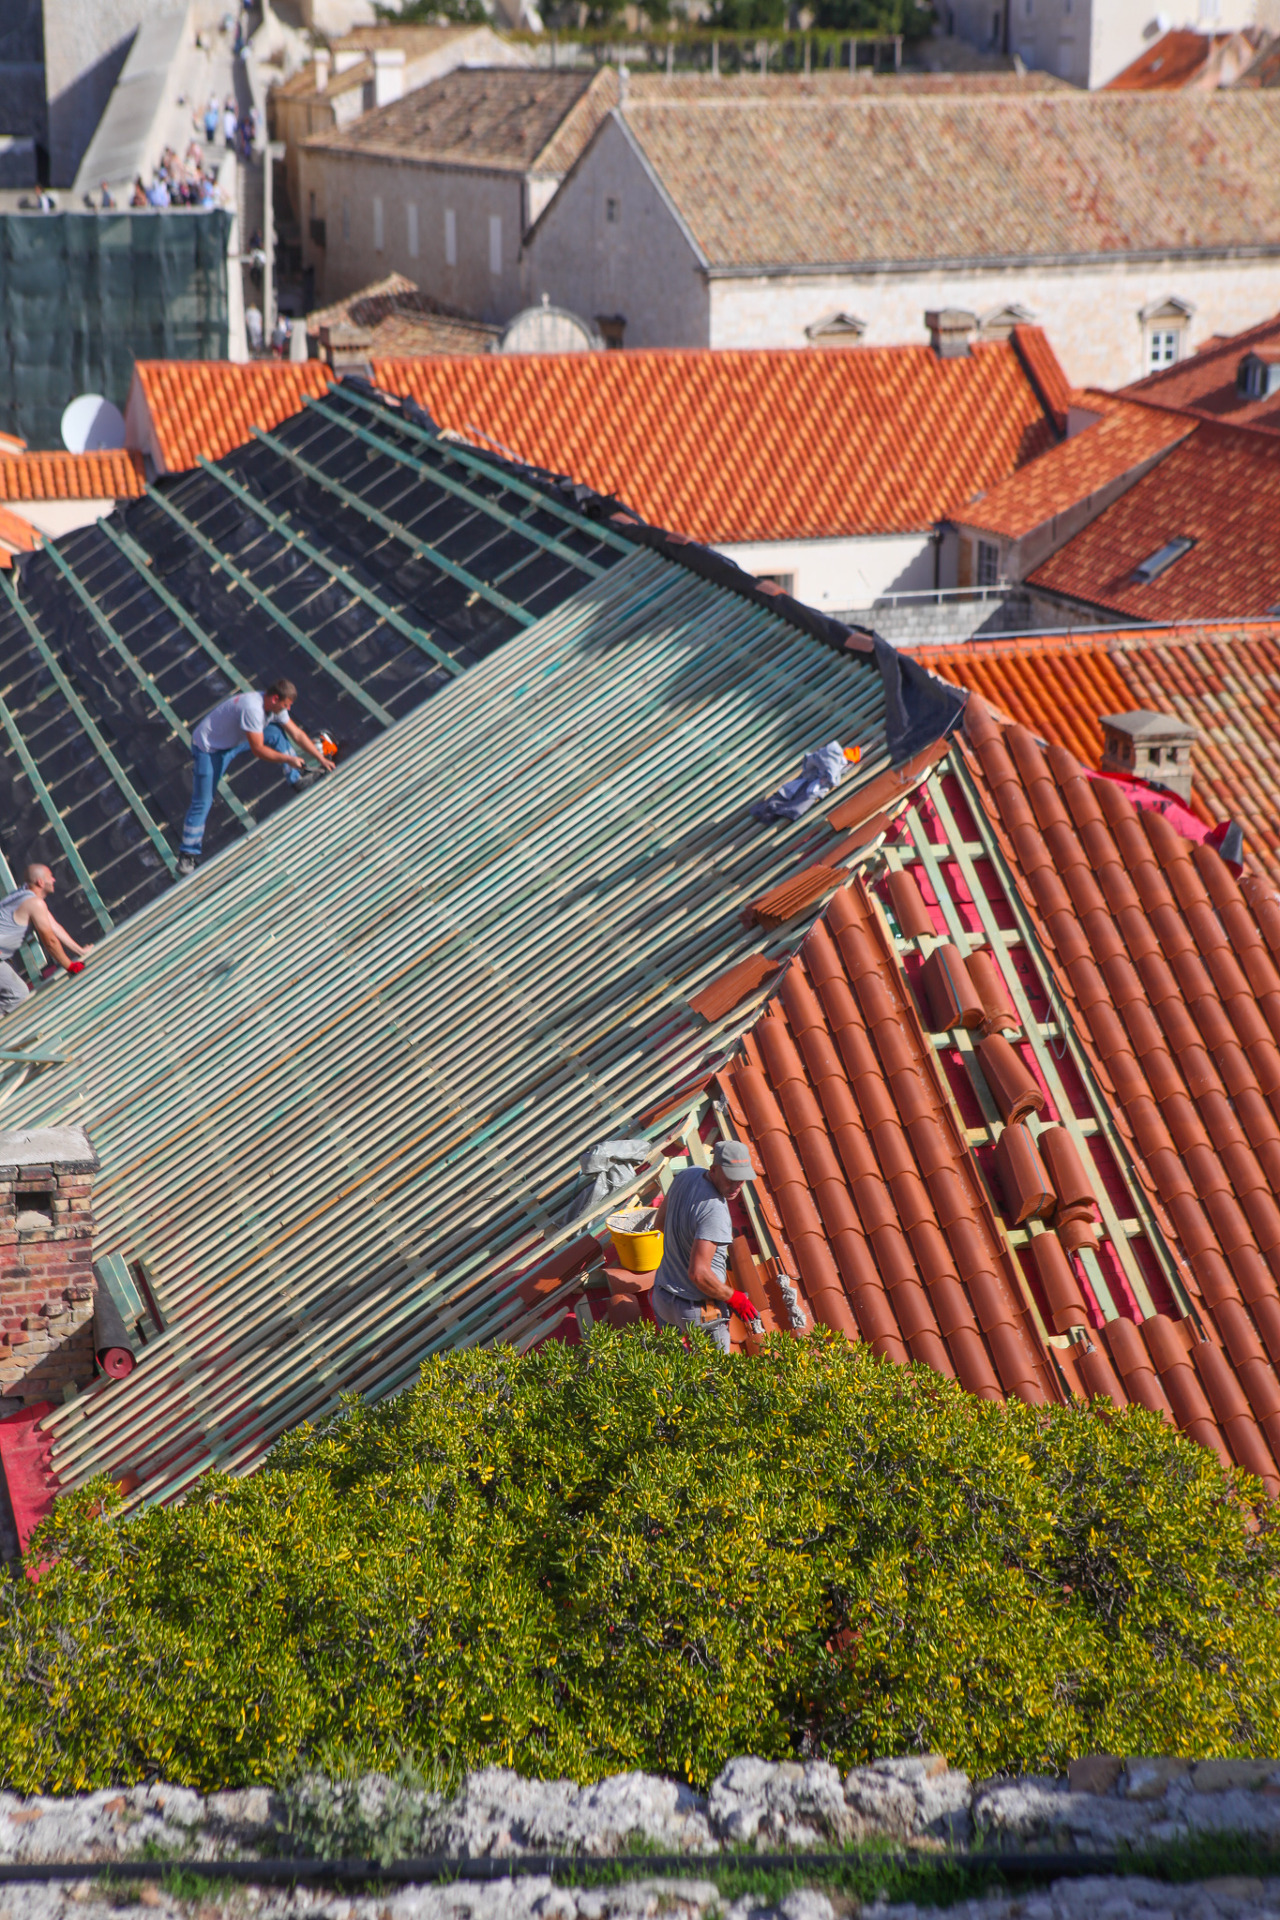 두브로브니크 지붕 색깔은 법적으로 정해져있다고 한다. 빨간색의 명도를 통해 집이 얼마나 오래됐는지 가늠해볼 수 있다.